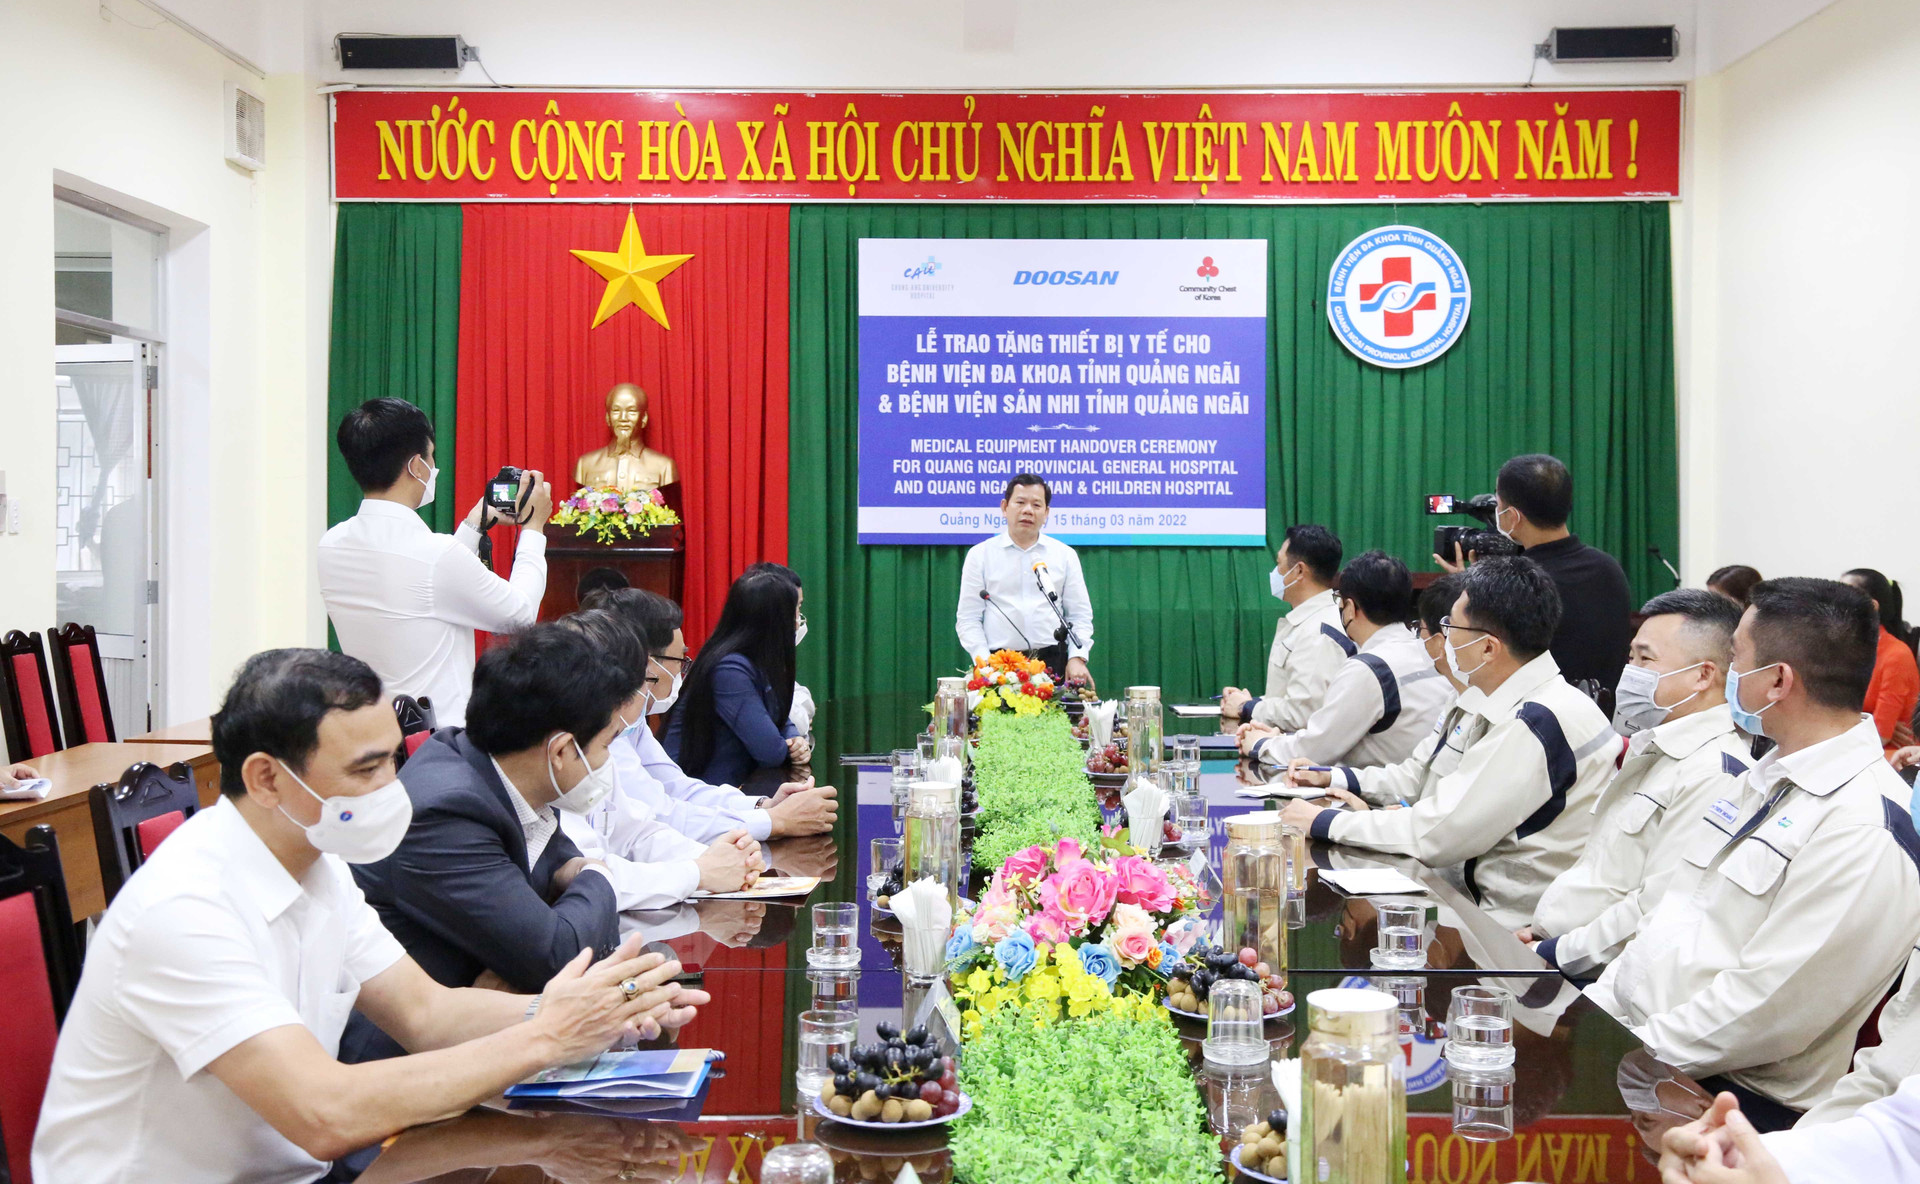 Lễ trao tặng thiết bị y tế diễn ra tại văn phòng Bệnh viện Đa khoa tỉnh Quảng Ngãi